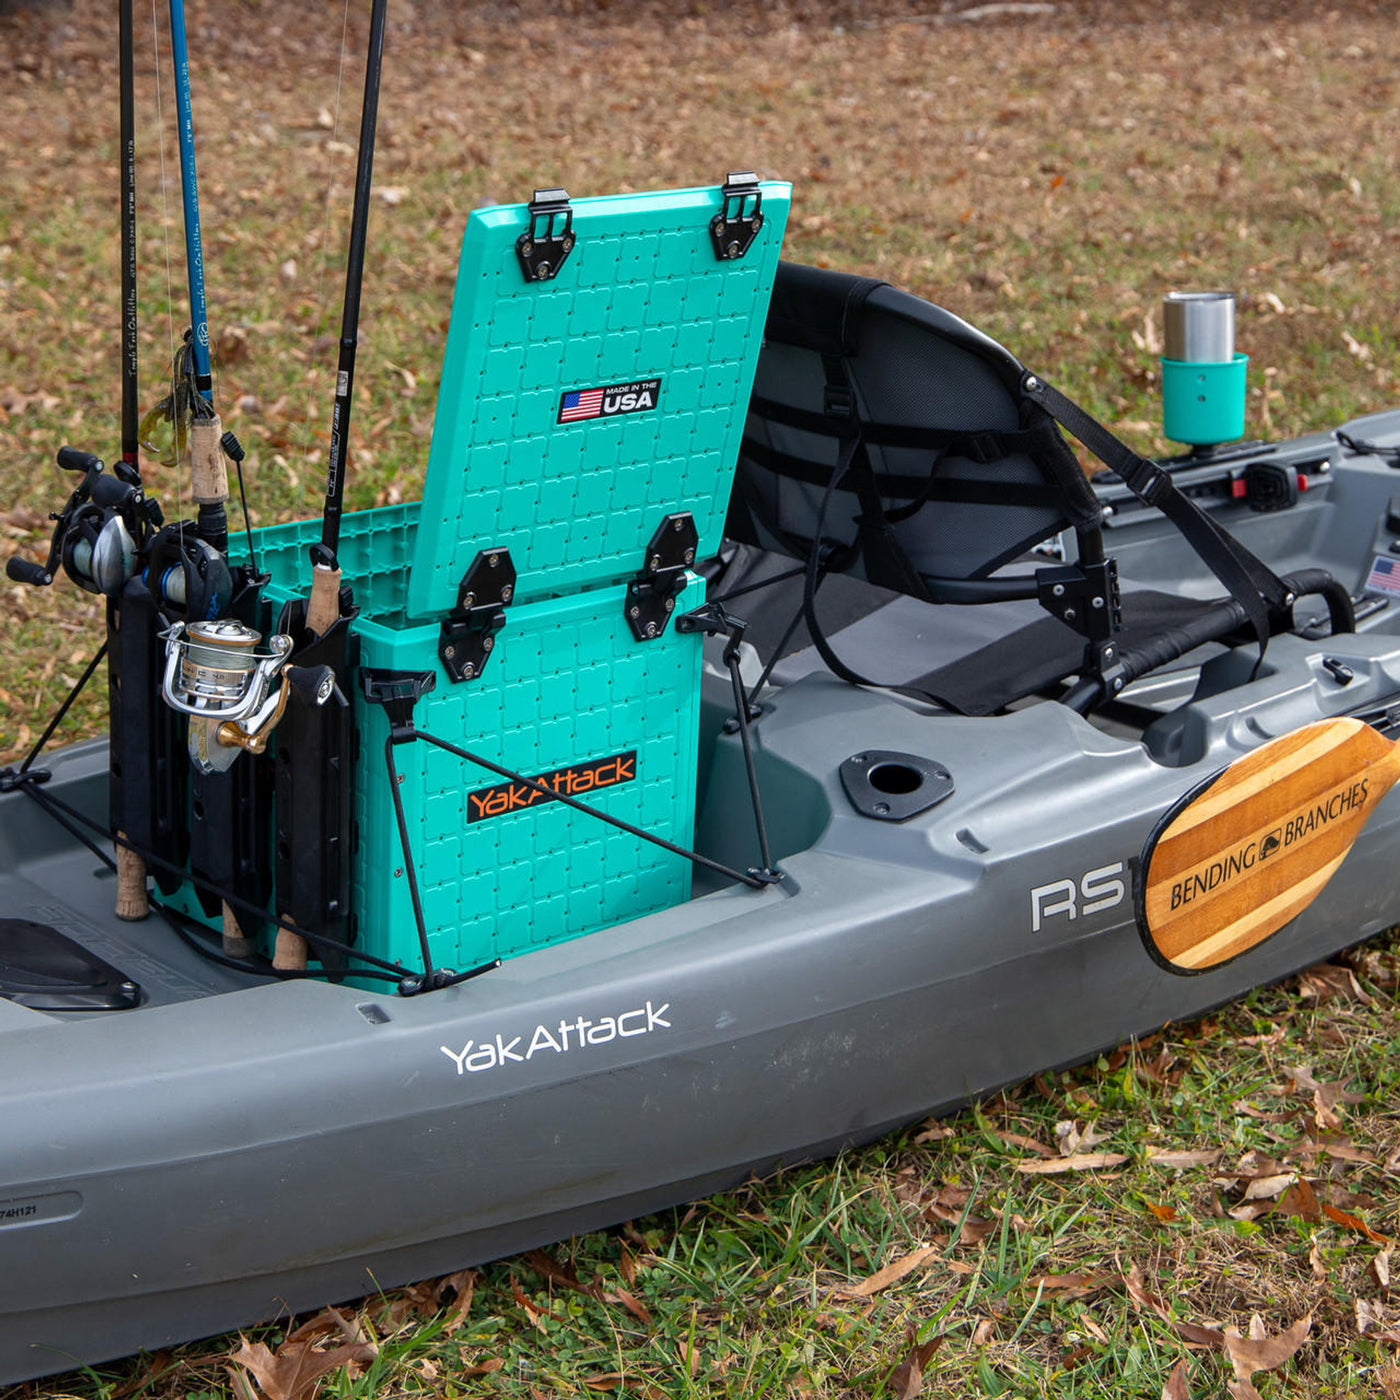 YakAttack BlackPak Pro Kayak Fishing Crate